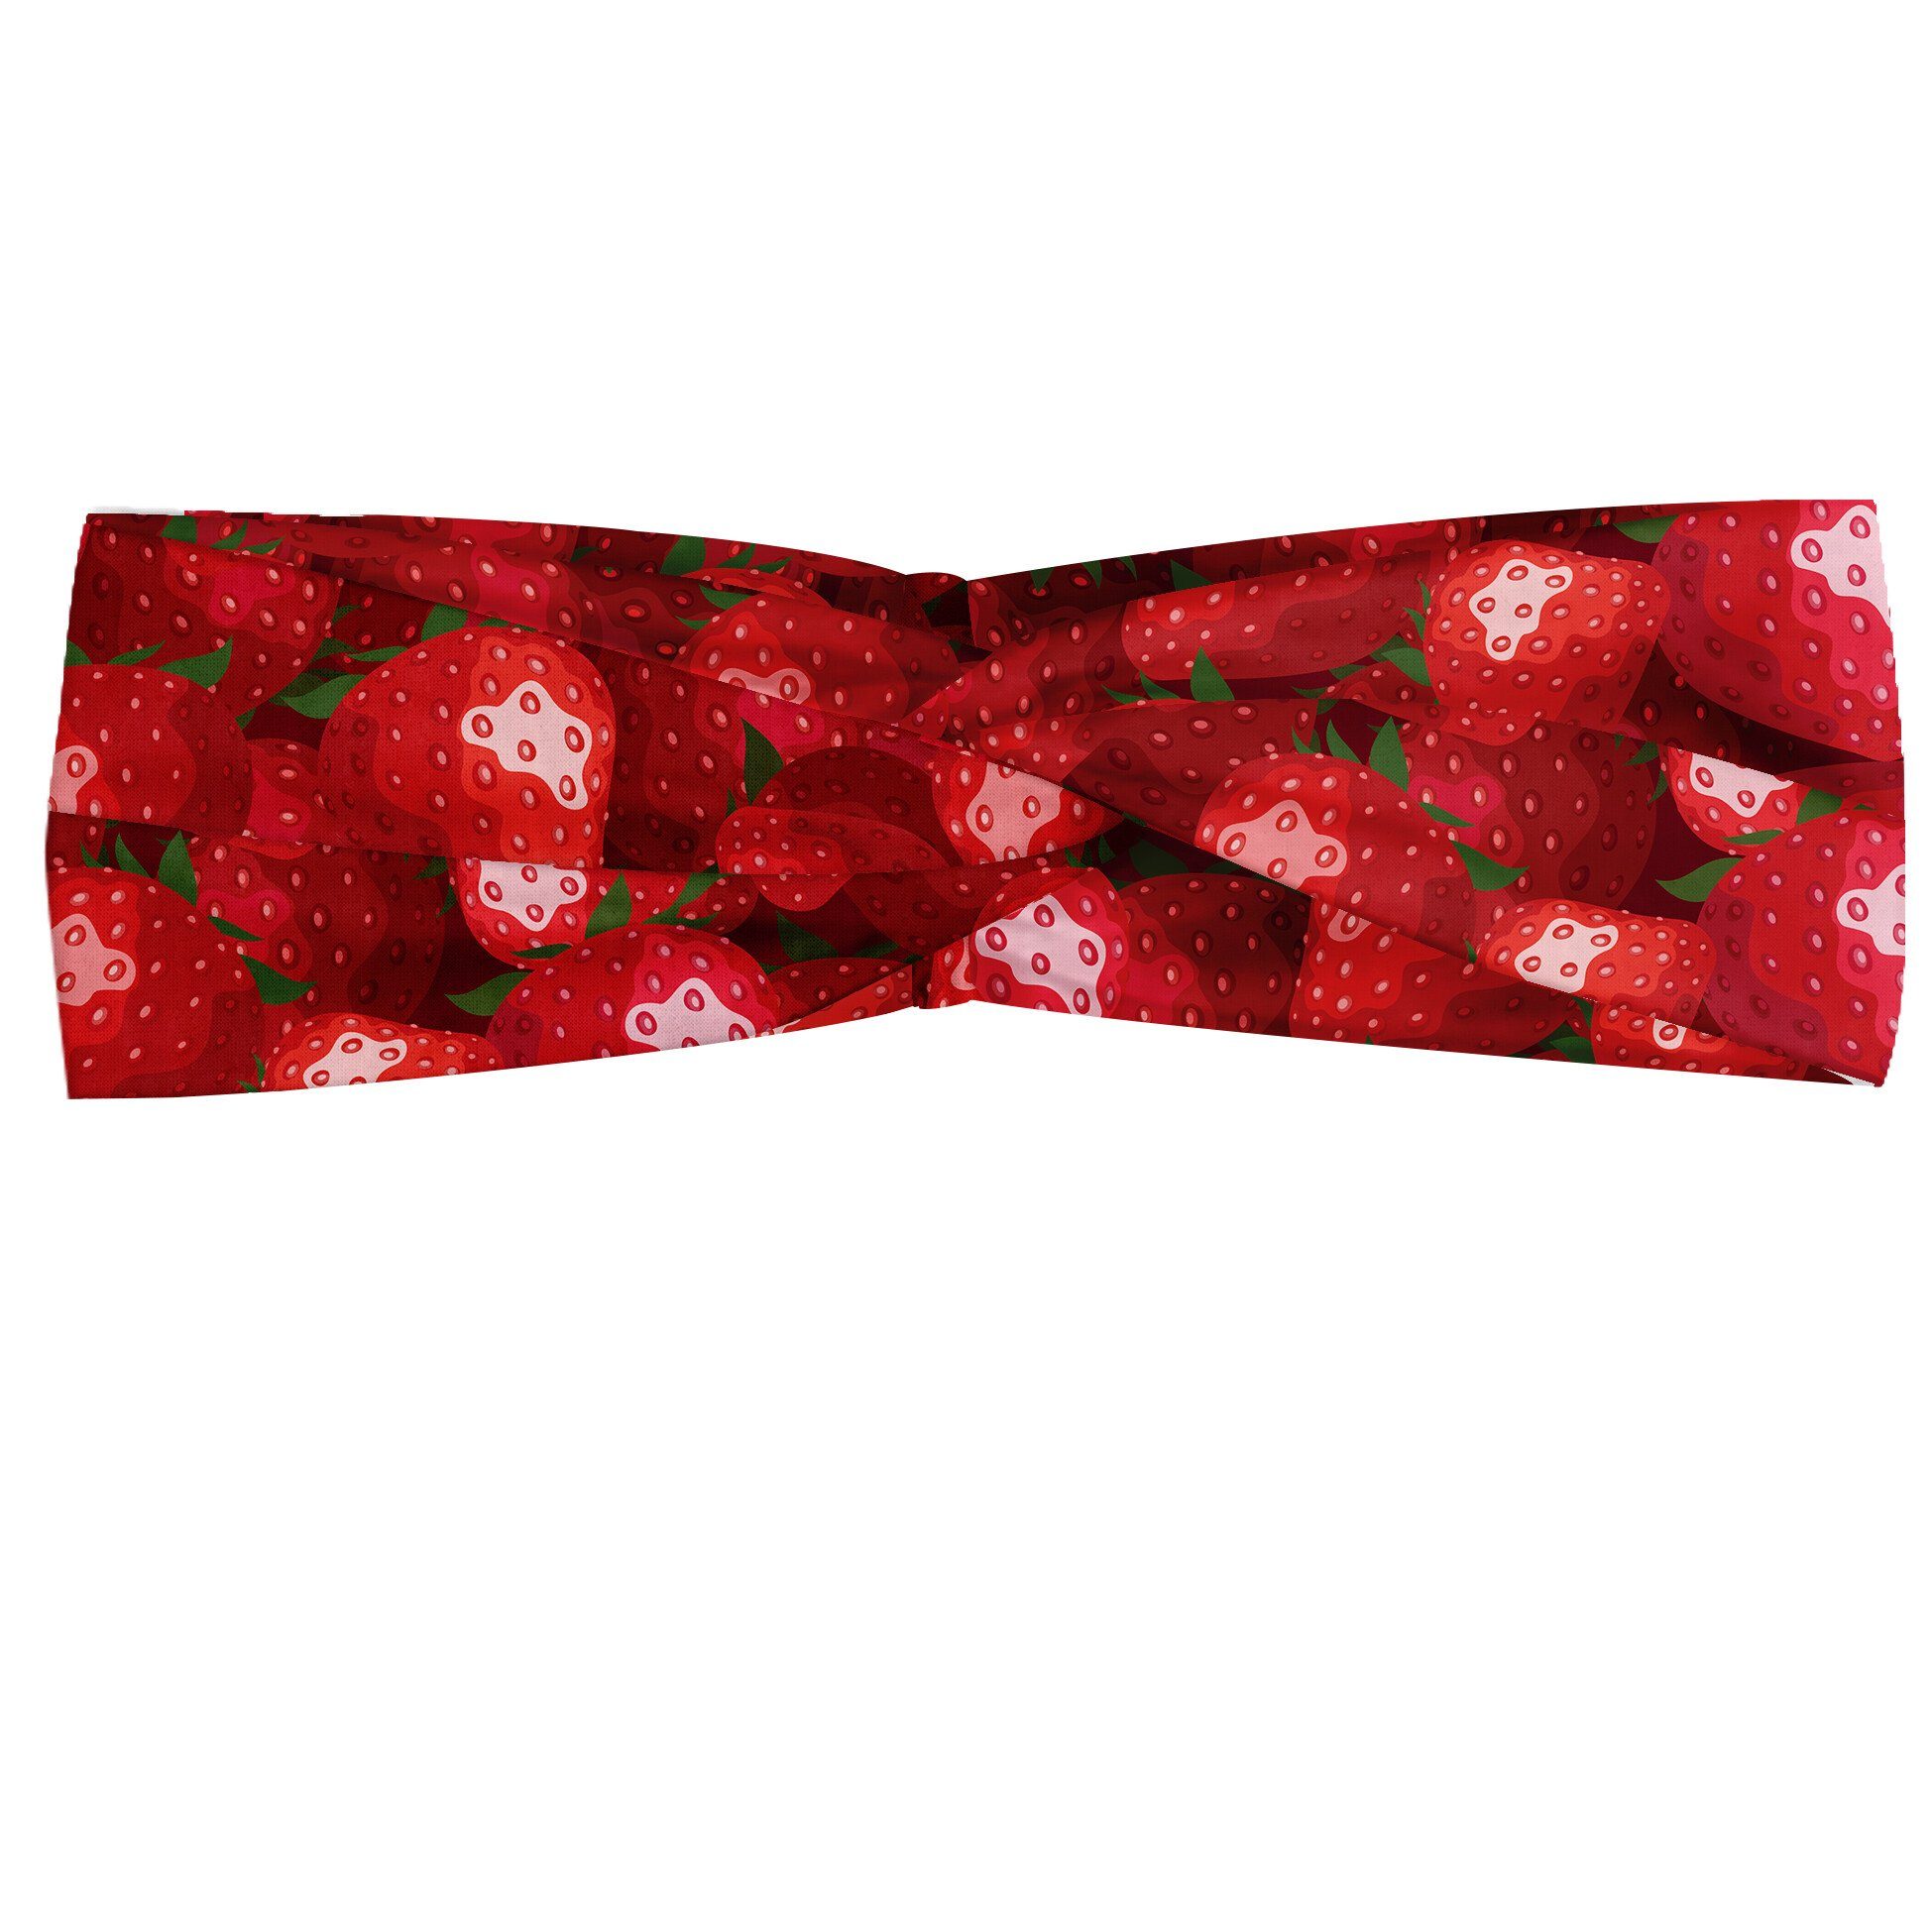 Abakuhaus Stirnband Elastisch und Angenehme alltags Reife accessories Früchte rot Erdbeeren